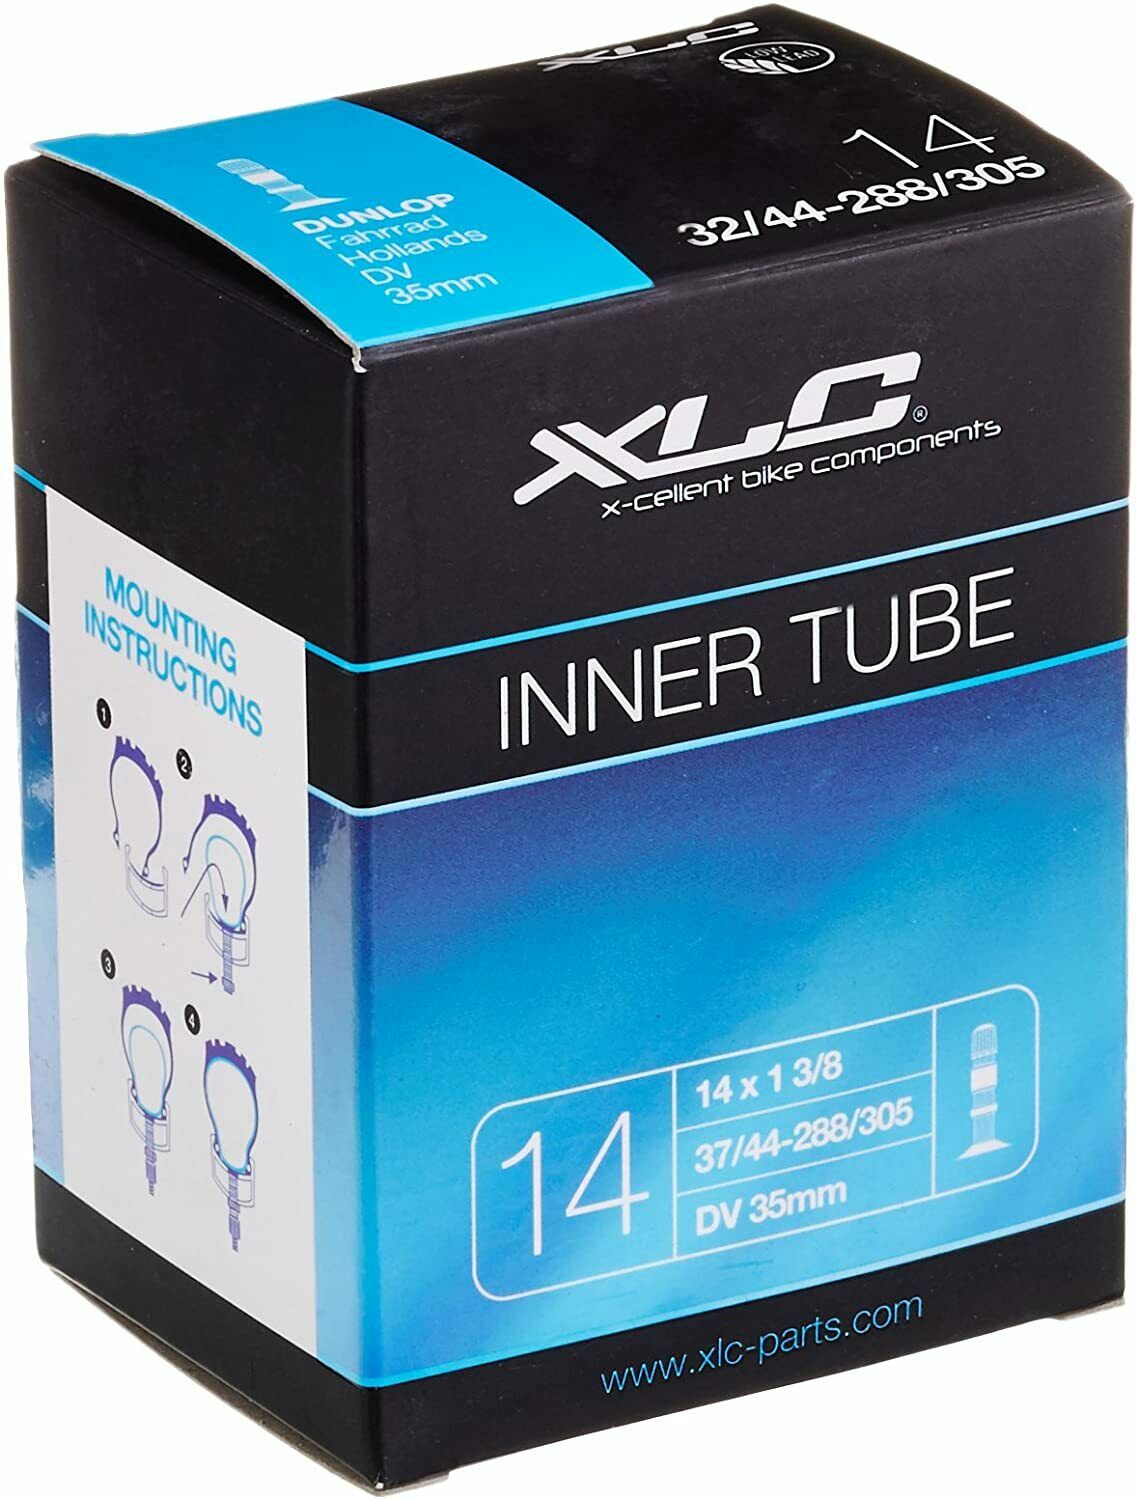 XLC 14 X 1 3/8 Kids Inner Tube - Dunlop Valve - 35mm Valve - 37/44-288/305 - Sportandleisure.com (6968053498010)